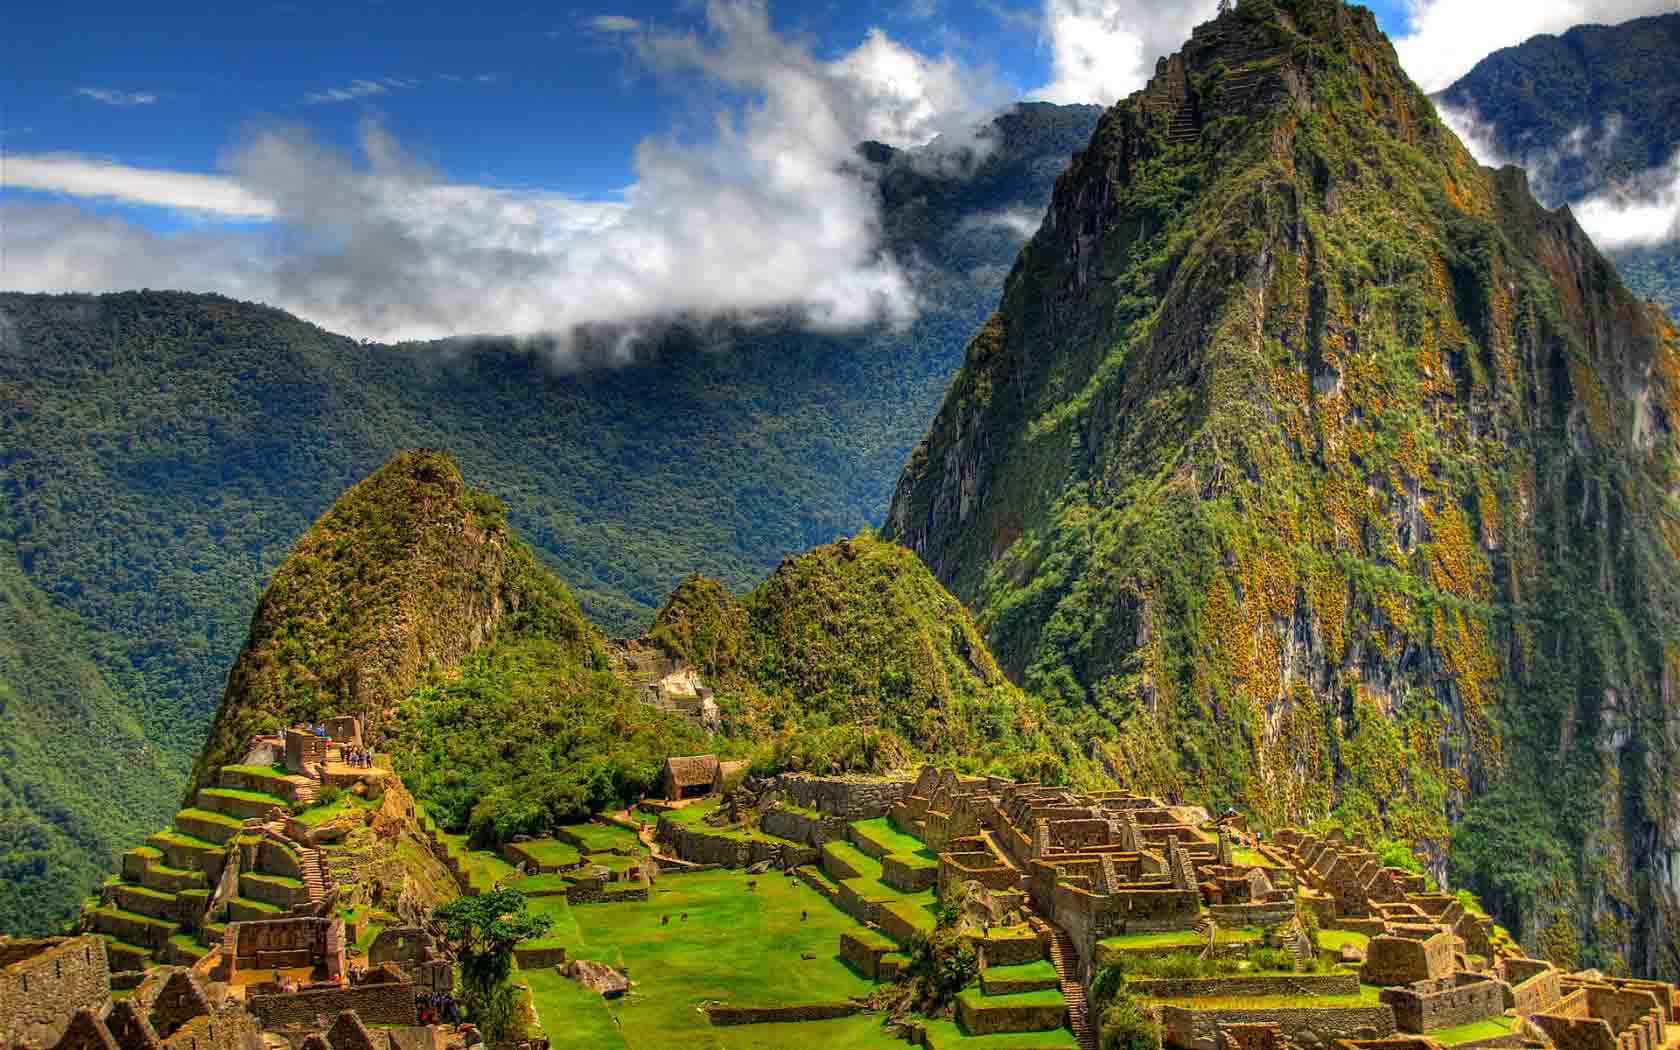 Road Project to Improve Access to Peru's Machu Picchu Site